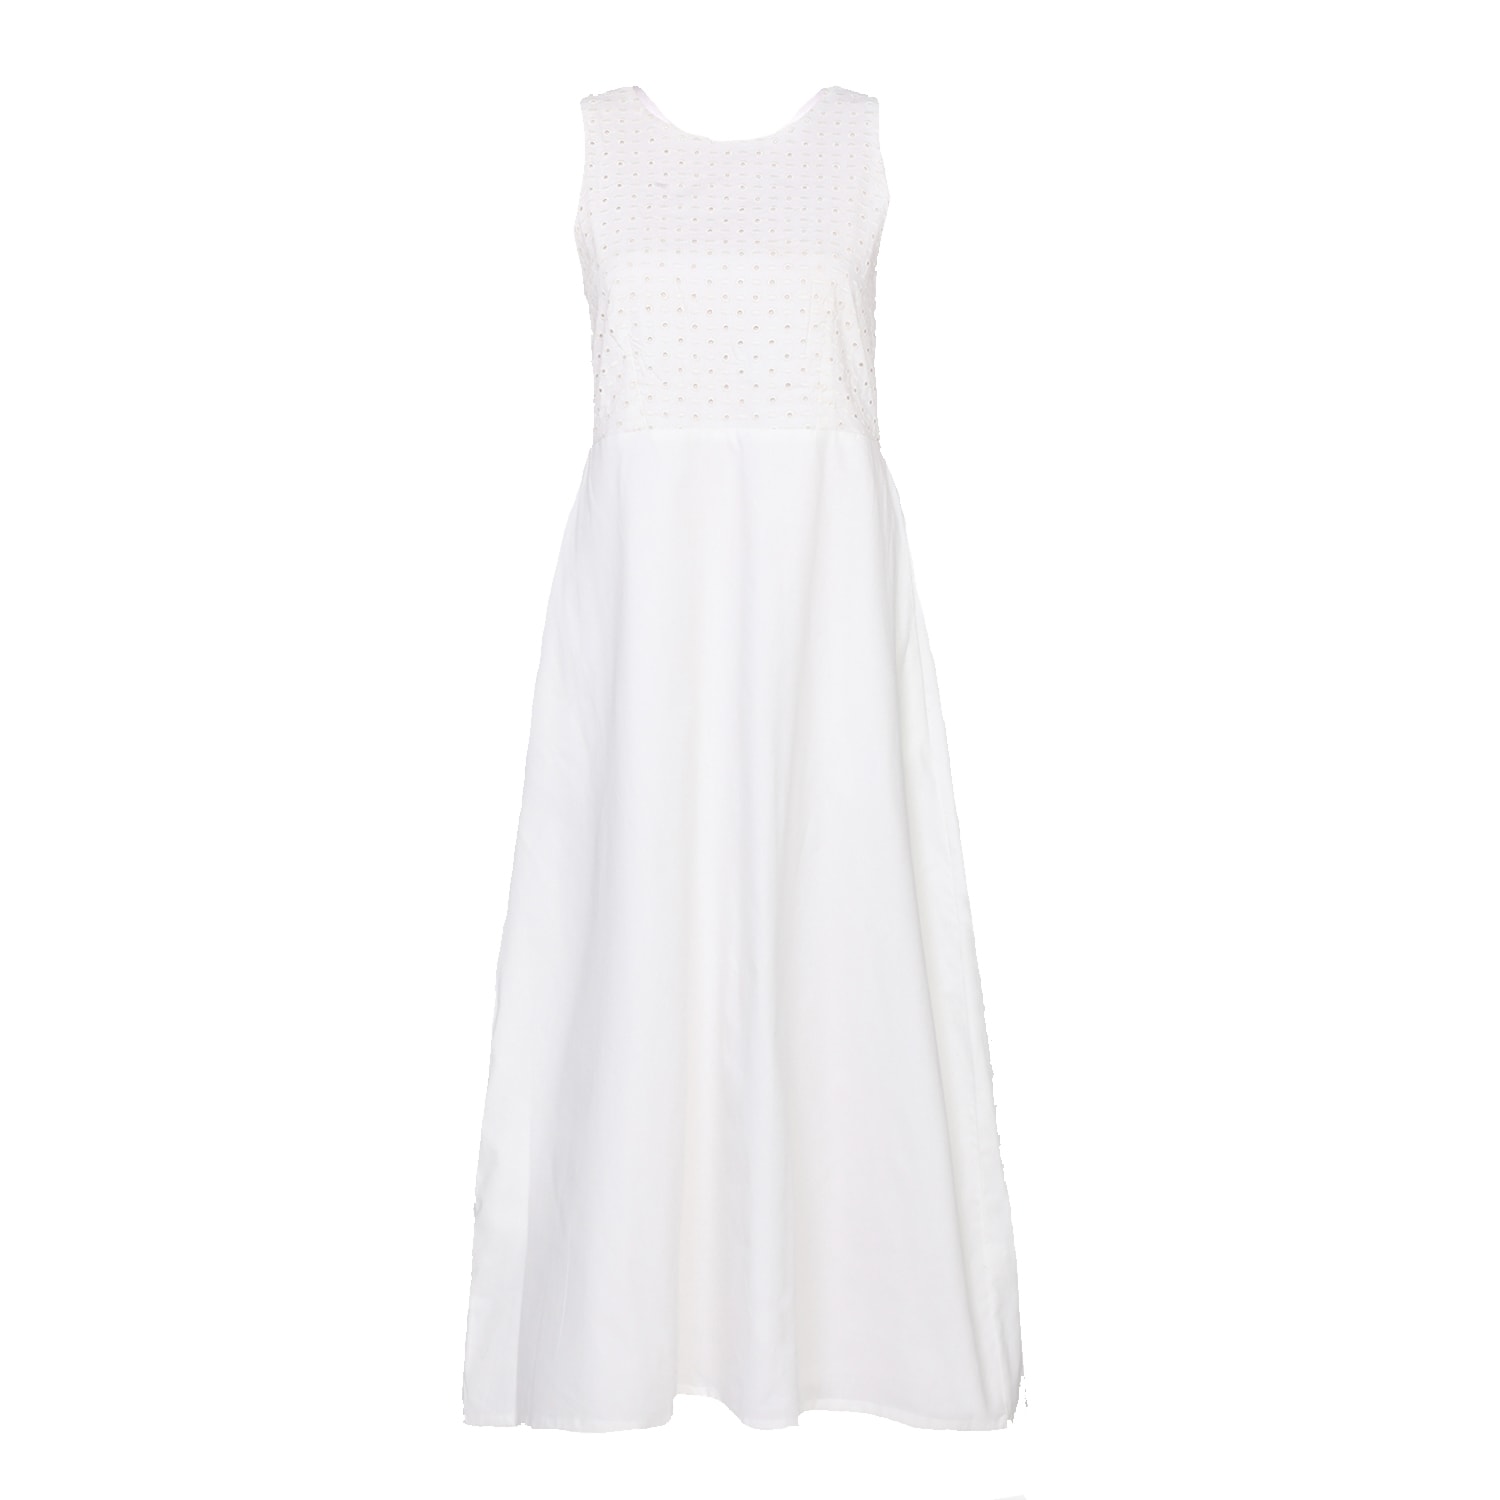 Reistor Women's White Cross-back Midi Dress